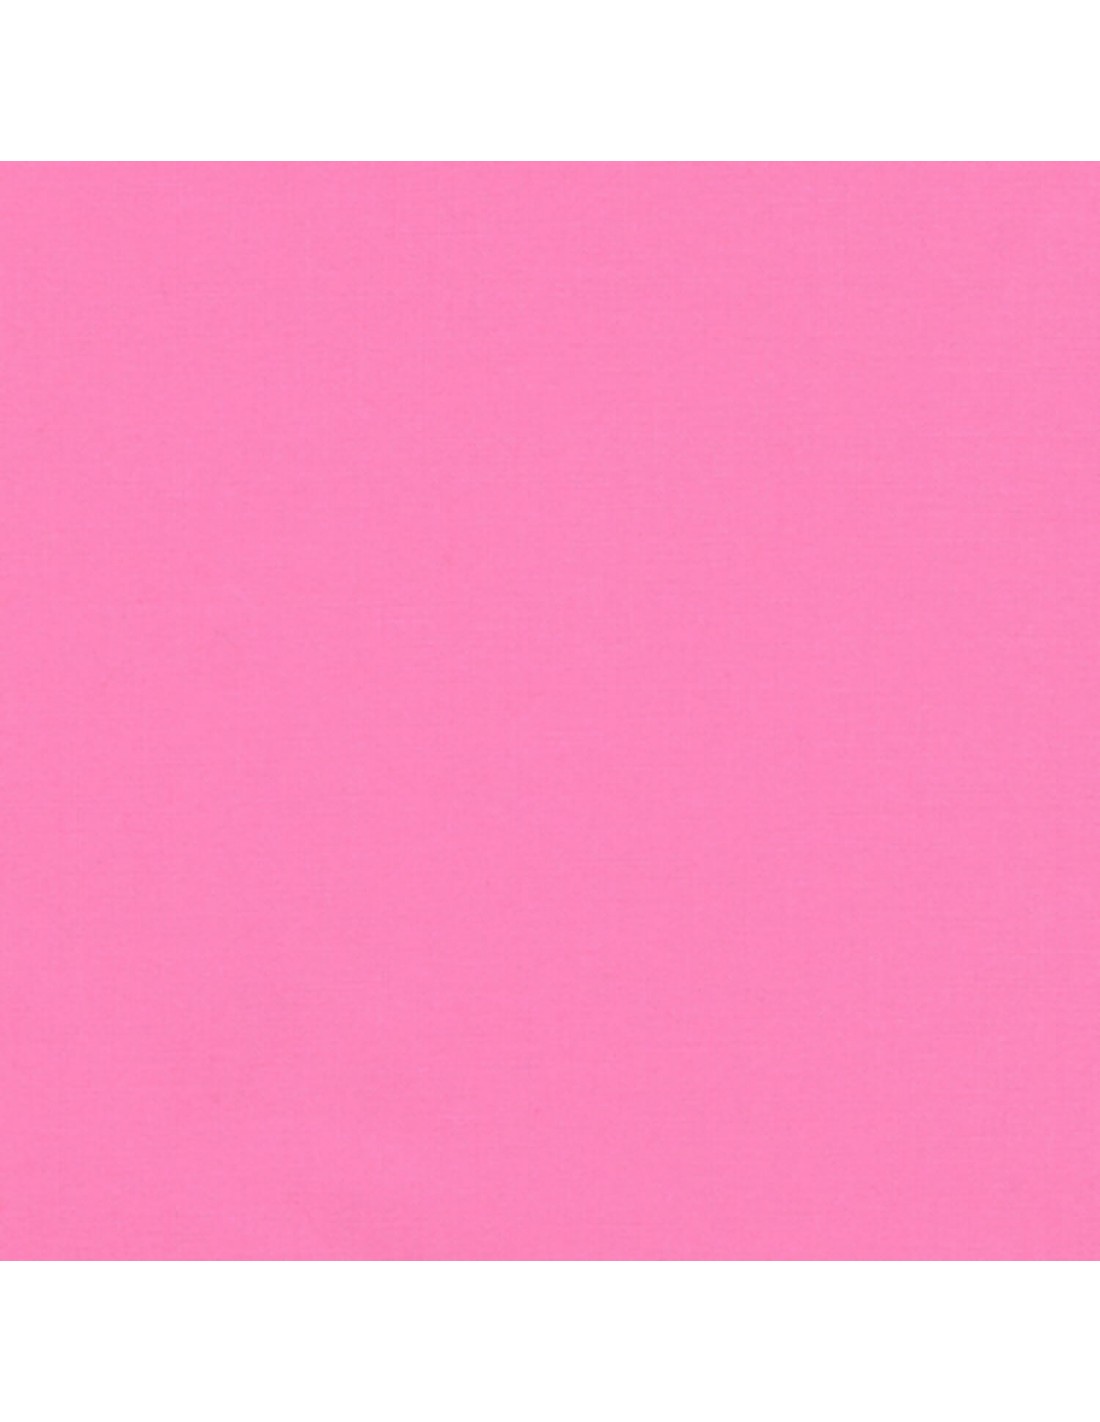 Плотные розовые. Ядовито розовый цвет. Глубокий розовый цвет. Приятный розовый цвет. Розовый квадрат.